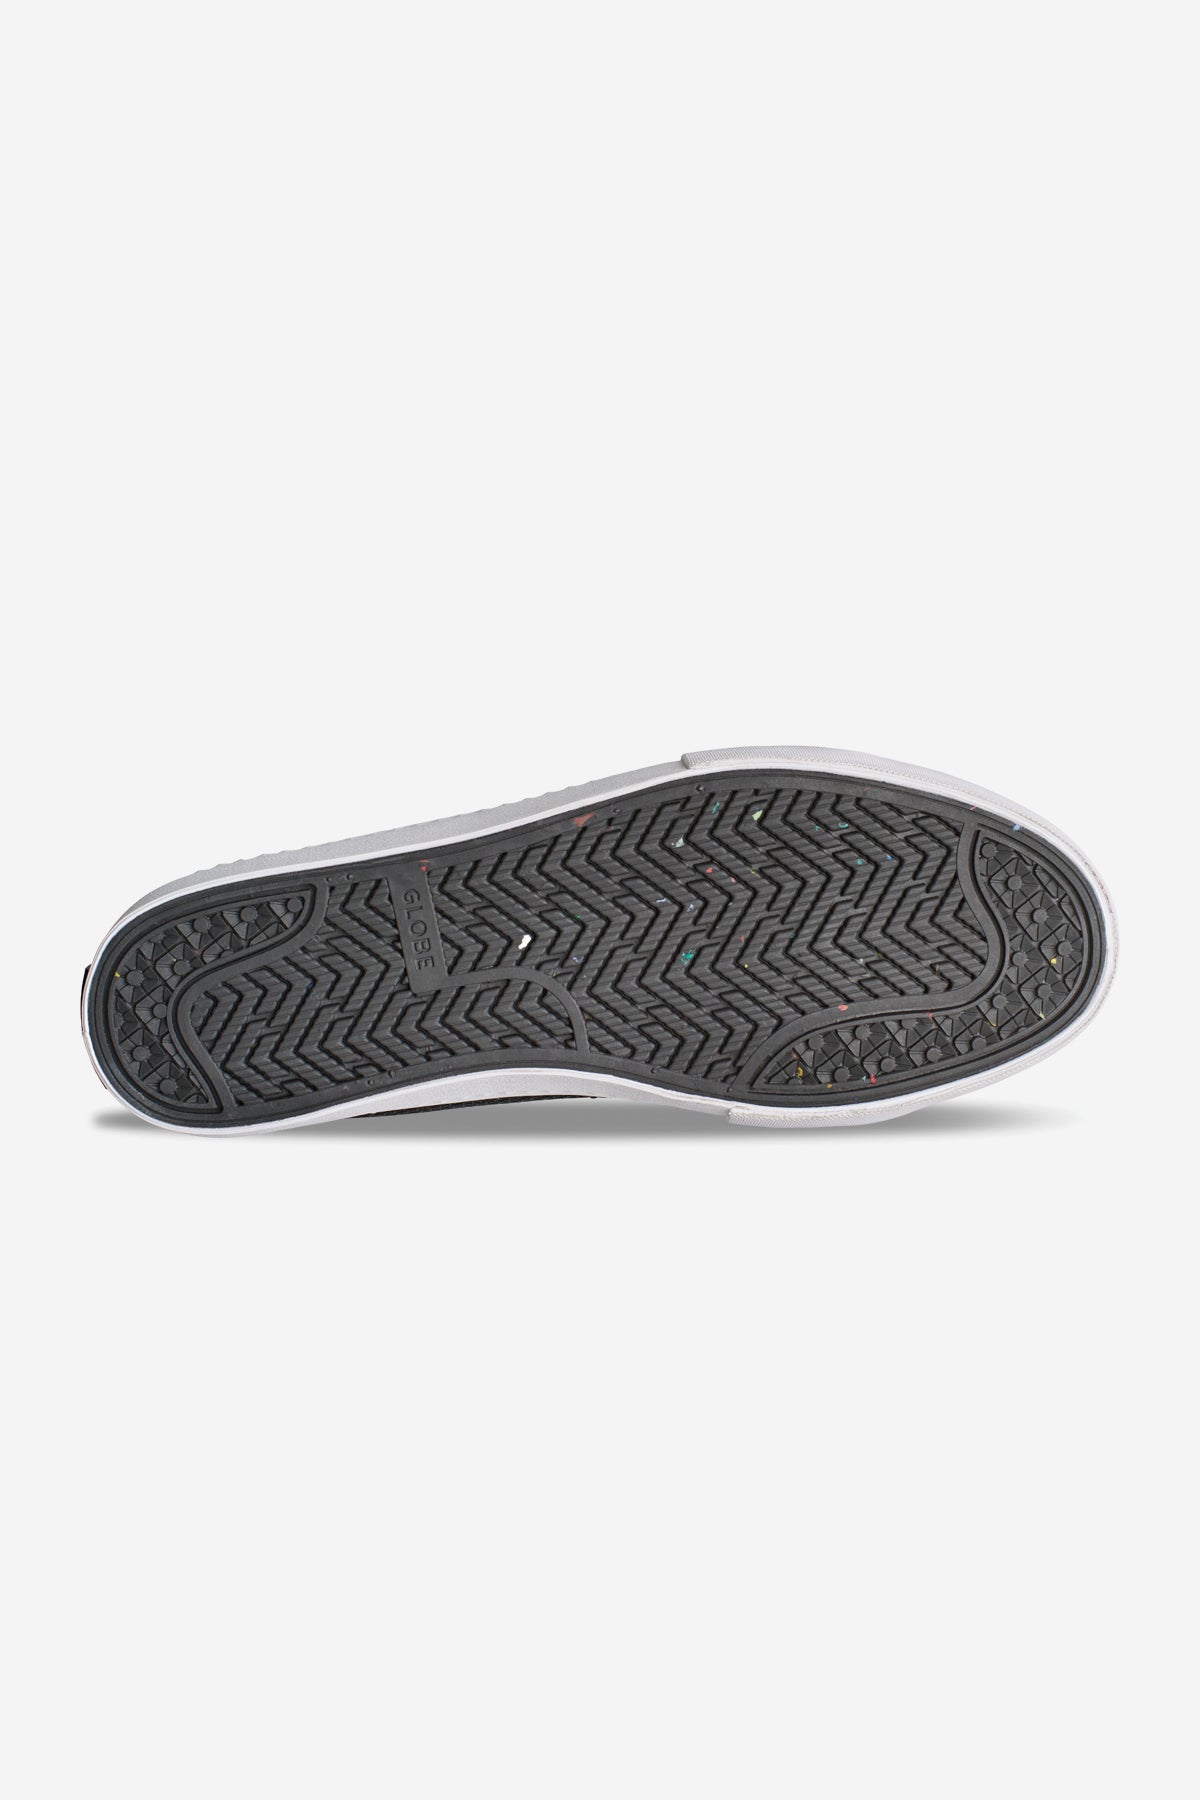 Globe - La Knit - Black/White - skateboard Sapatos